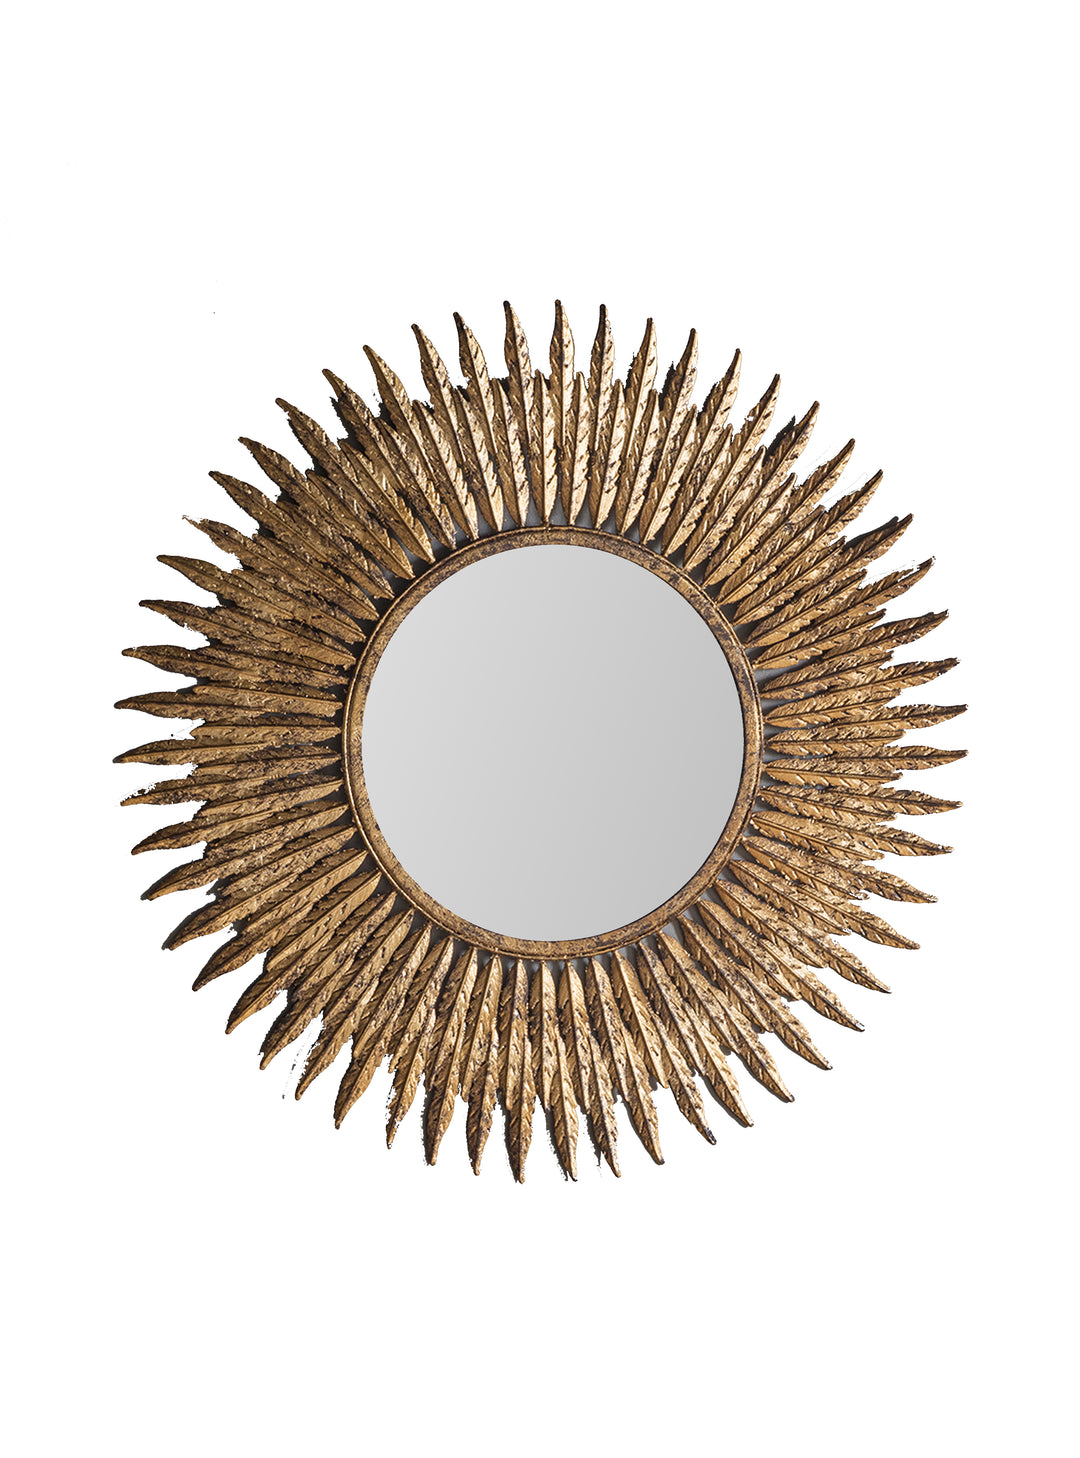 Feathers Mirror, Starburst Wall Mirror, Metallic Sunburst Mirror